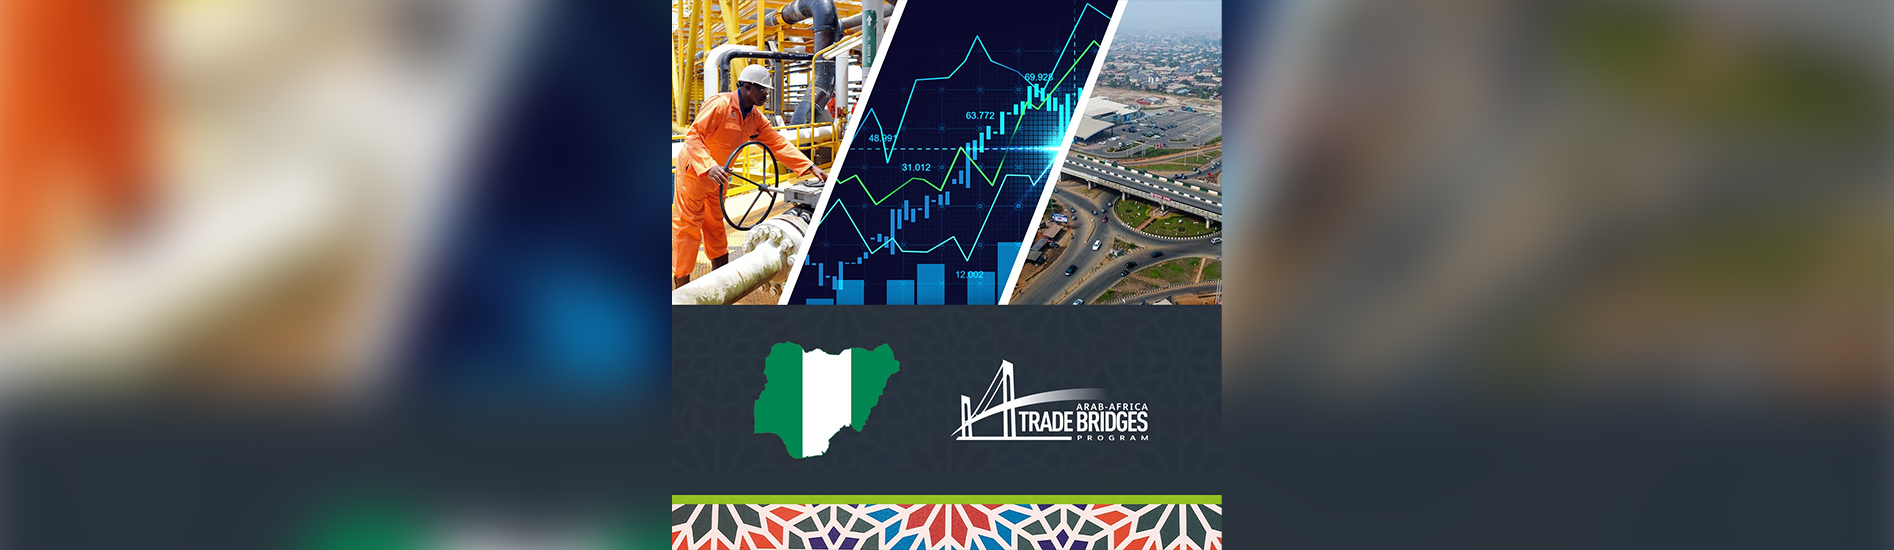 برنامج جسور التجارة العربية الأفريقية يعلن عن انضمام جمهورية نيجيريا الاتحادية عضوا رسميا في البرنامج